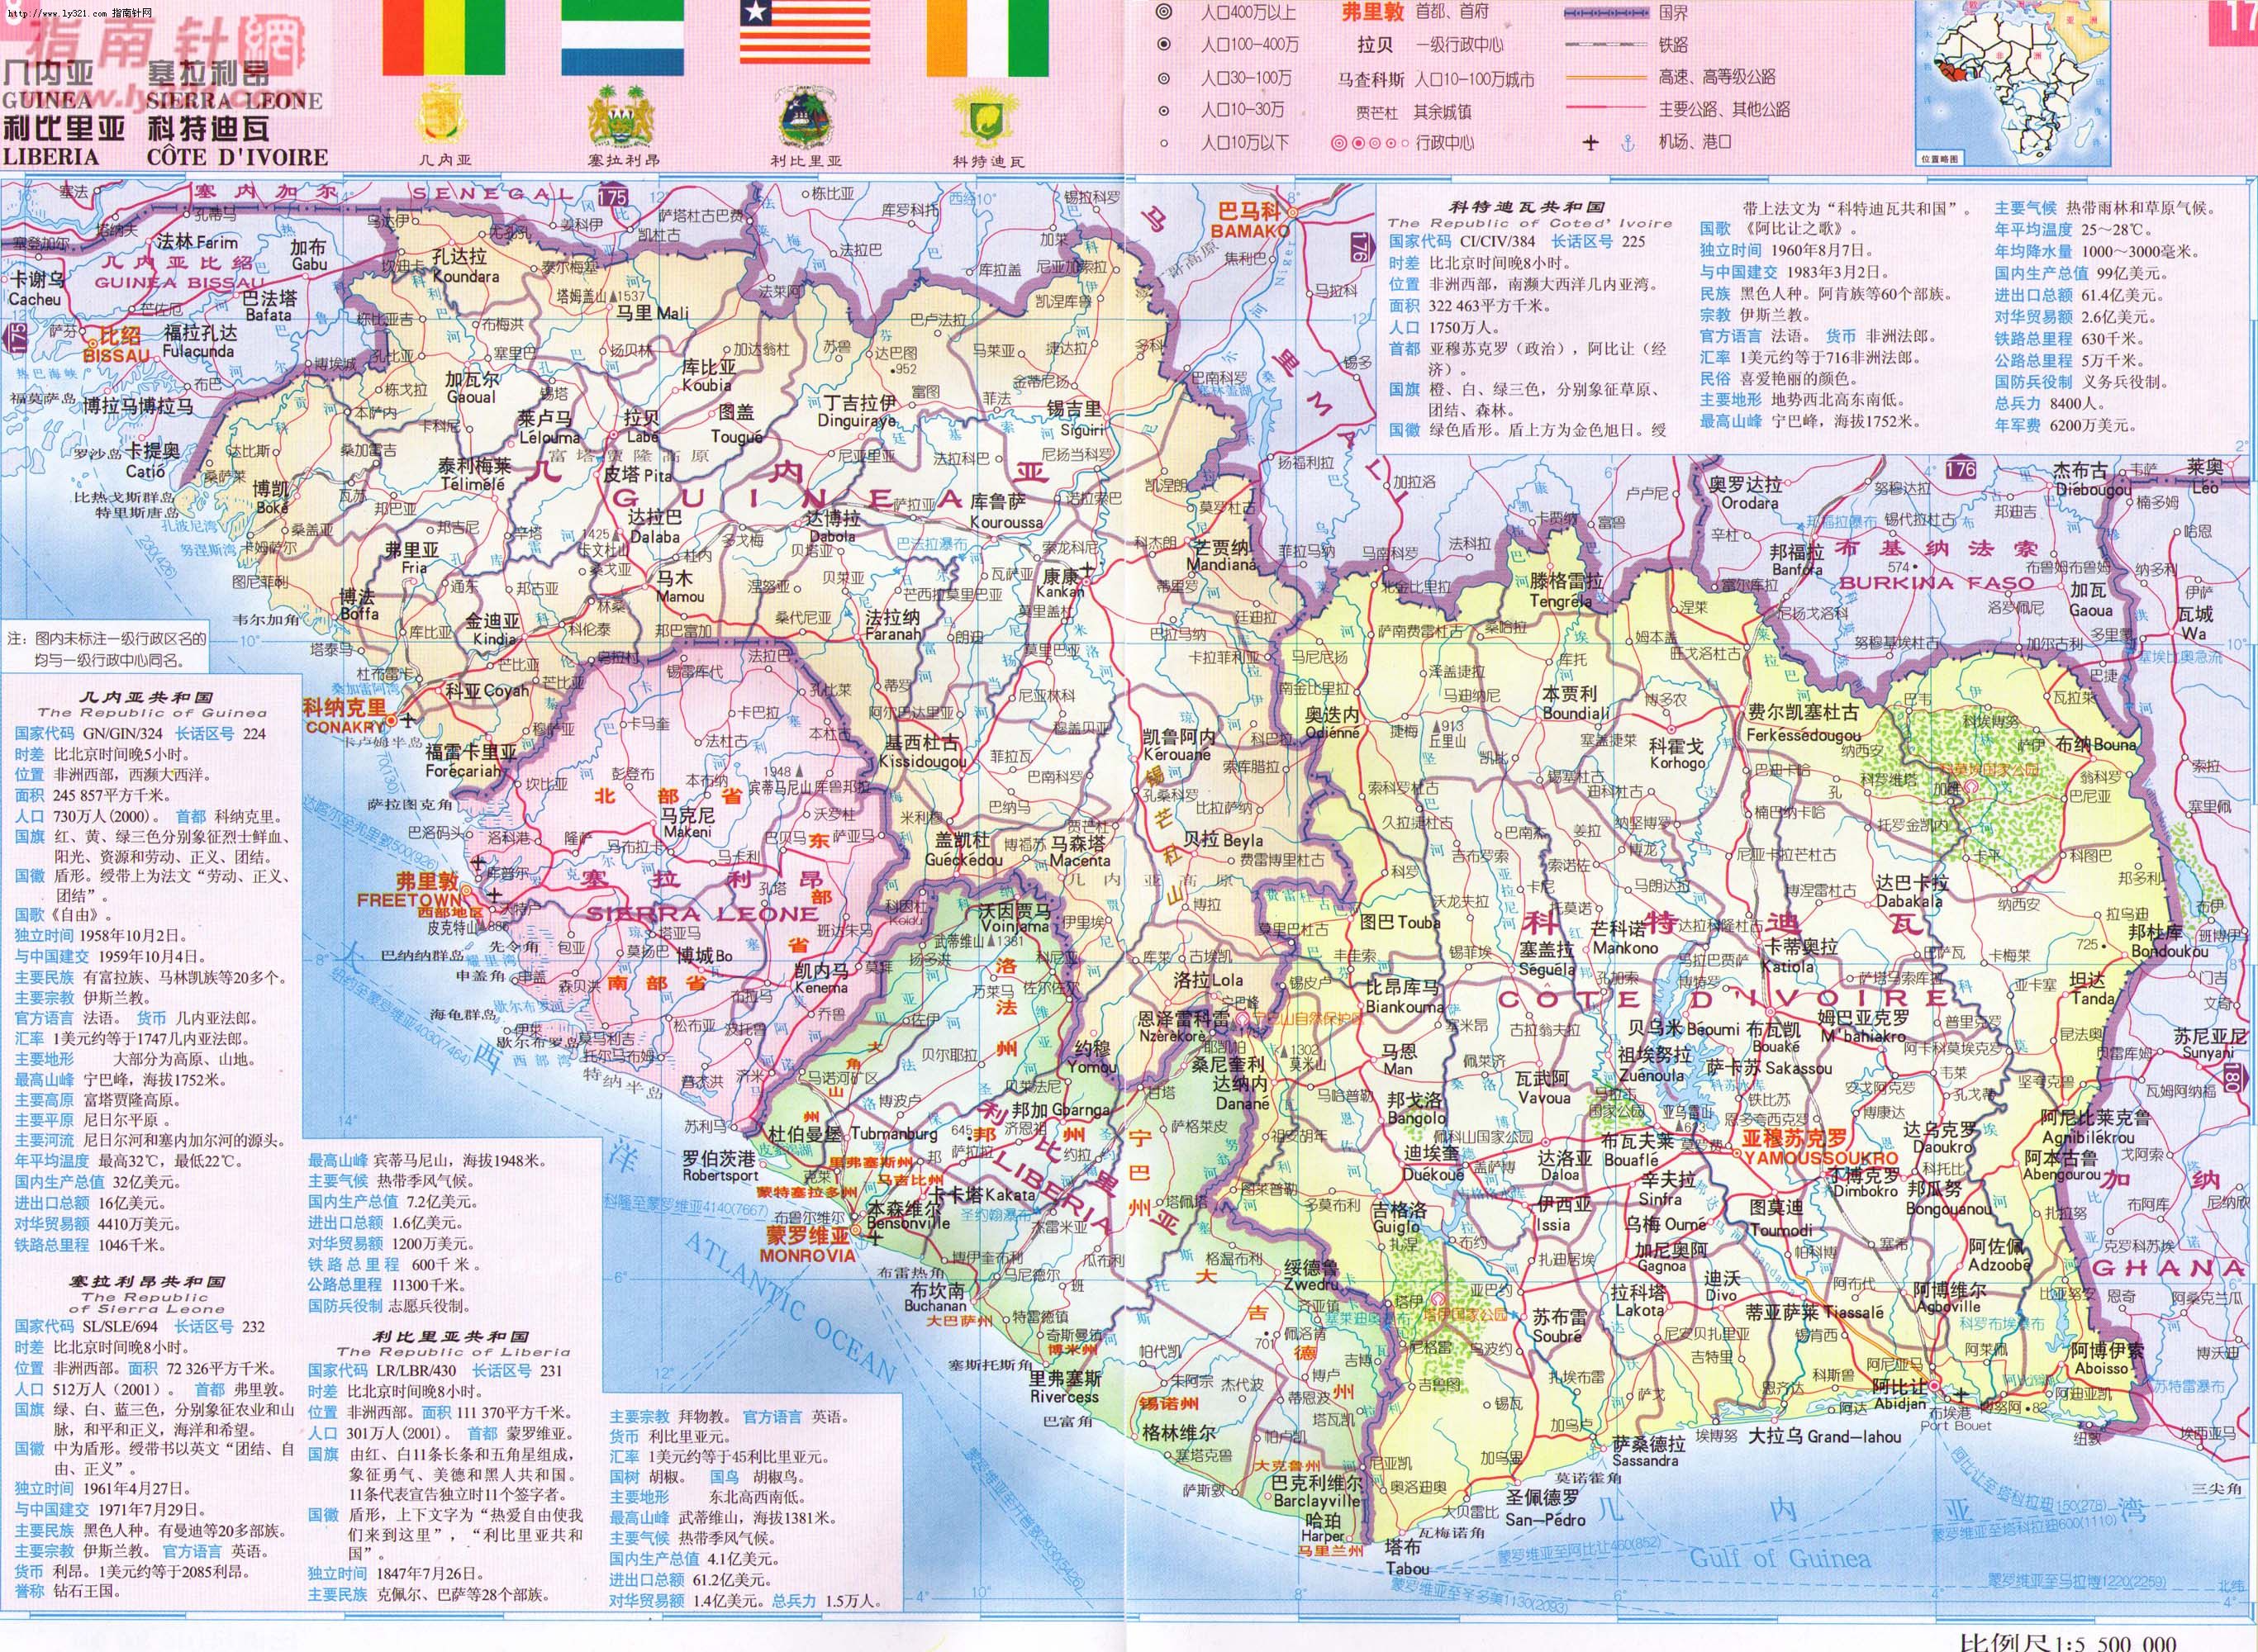 世界地圖-利比理亞.jpg